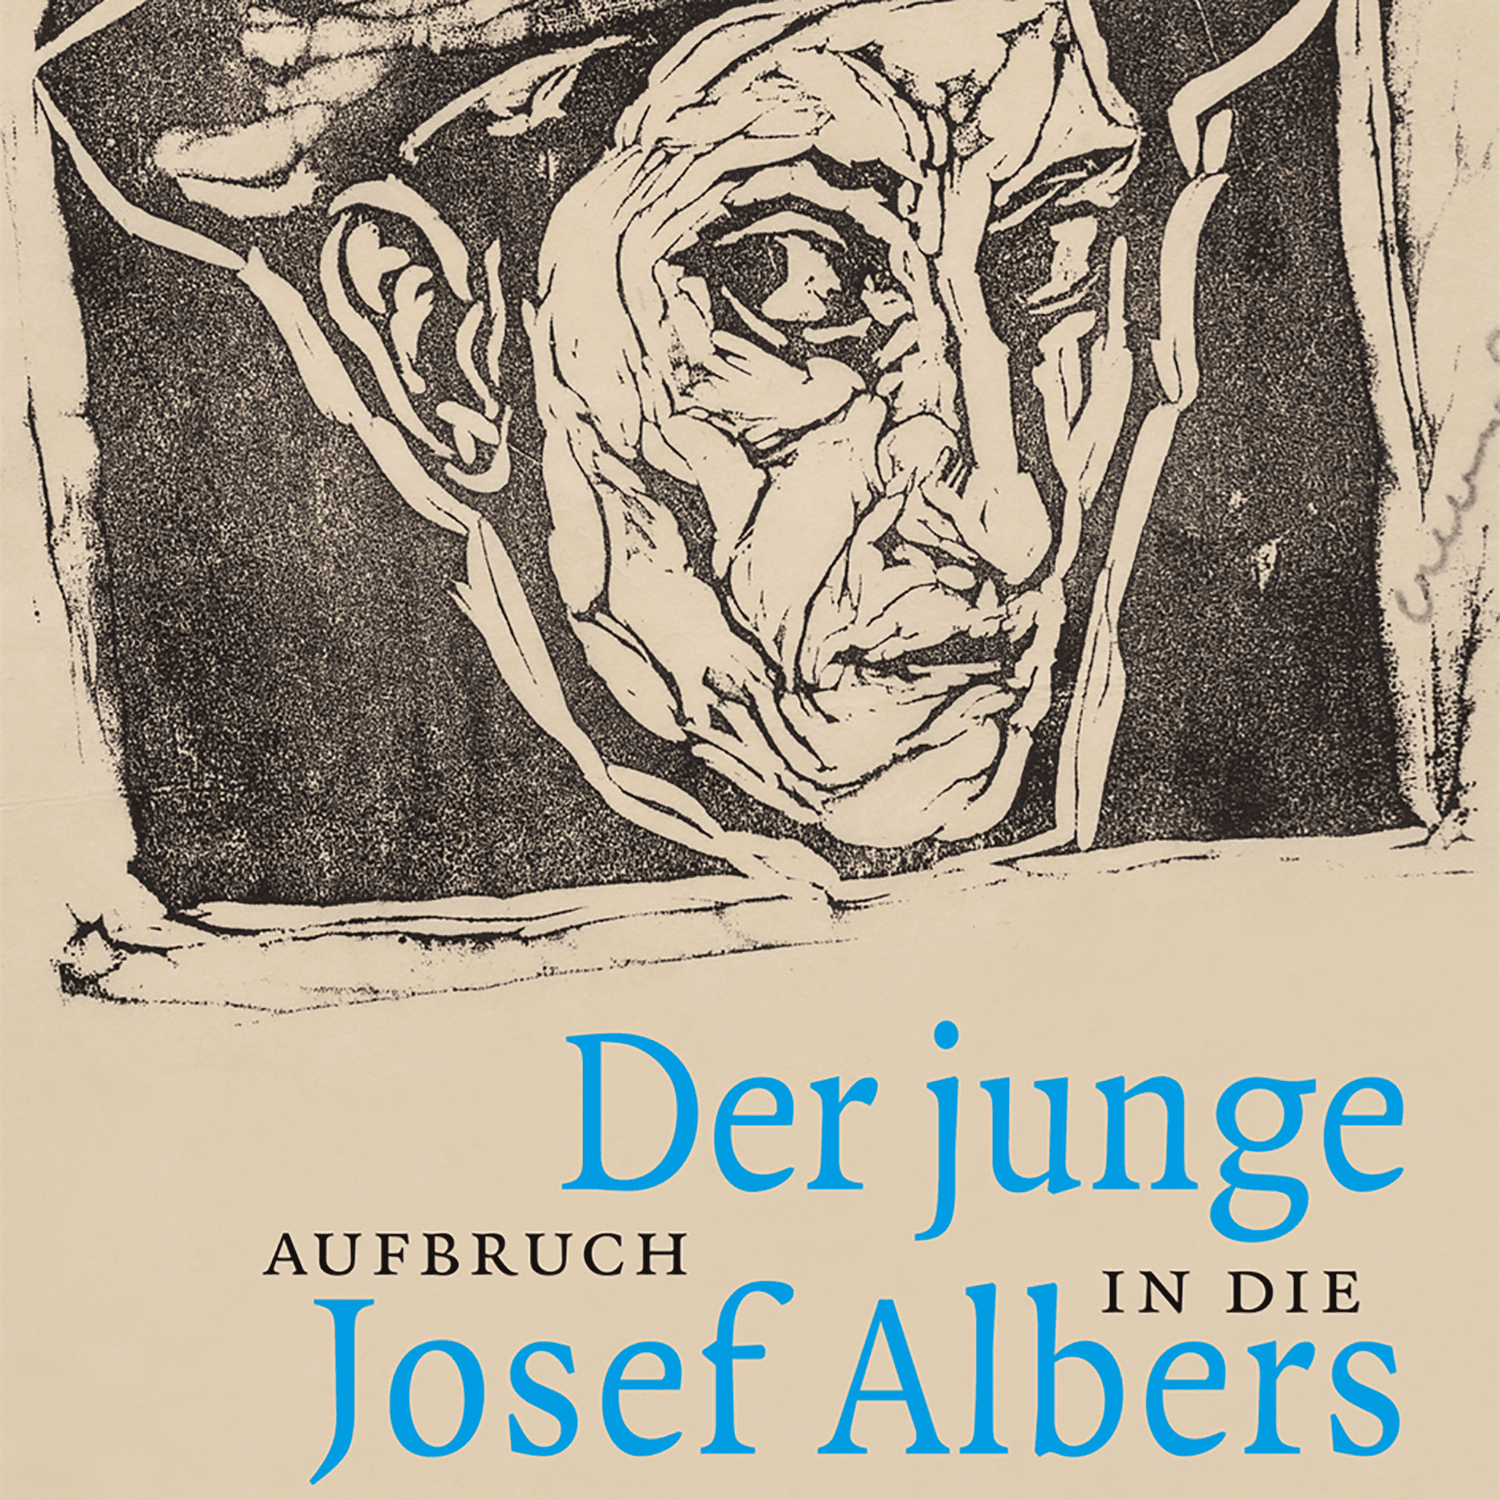 Afbeelding van De jonge Josef Albers